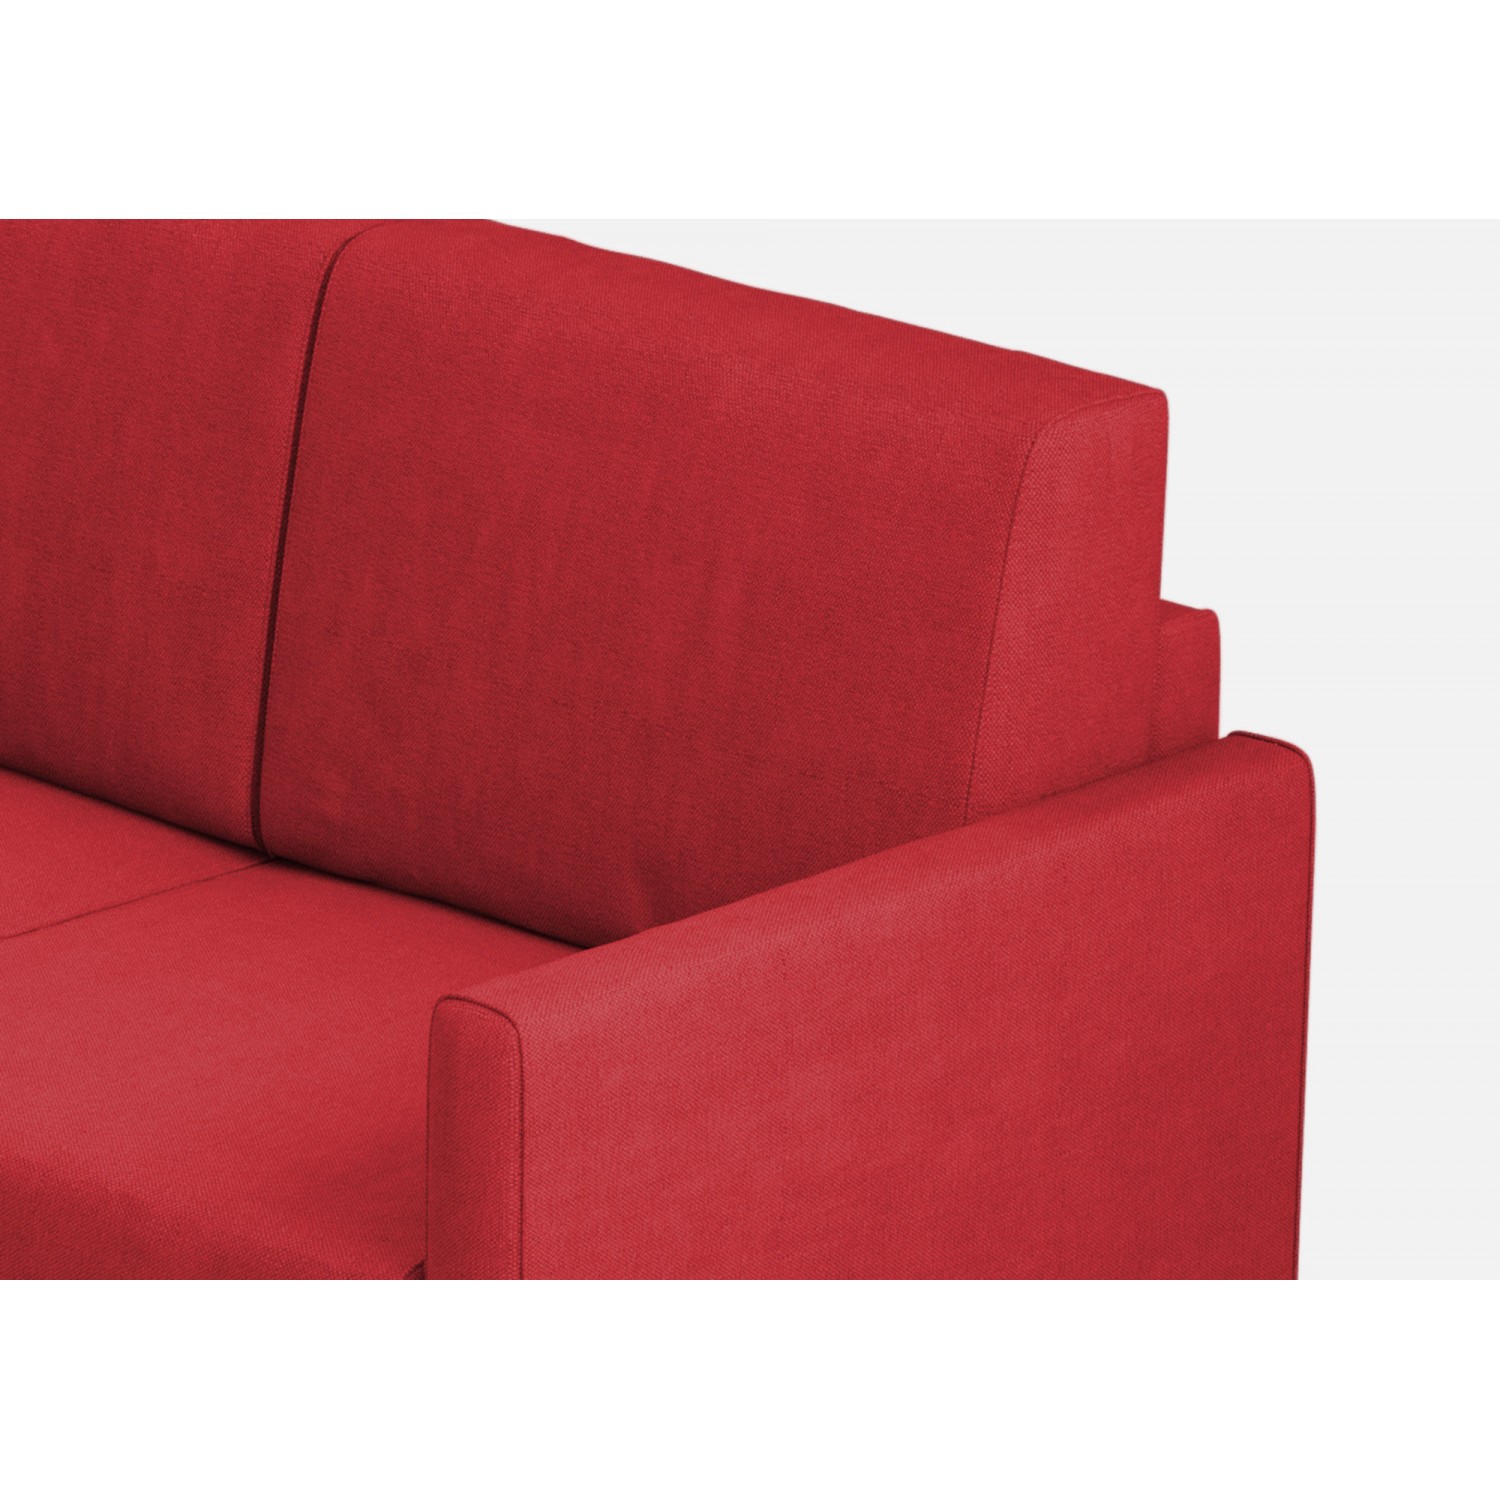 Ityhome Divano Karay 3 posti  (tre sedute da 60cm) + angolo + divano 2 posti( due sedute da 60cm) misure esterne L.281x221 colore rosso